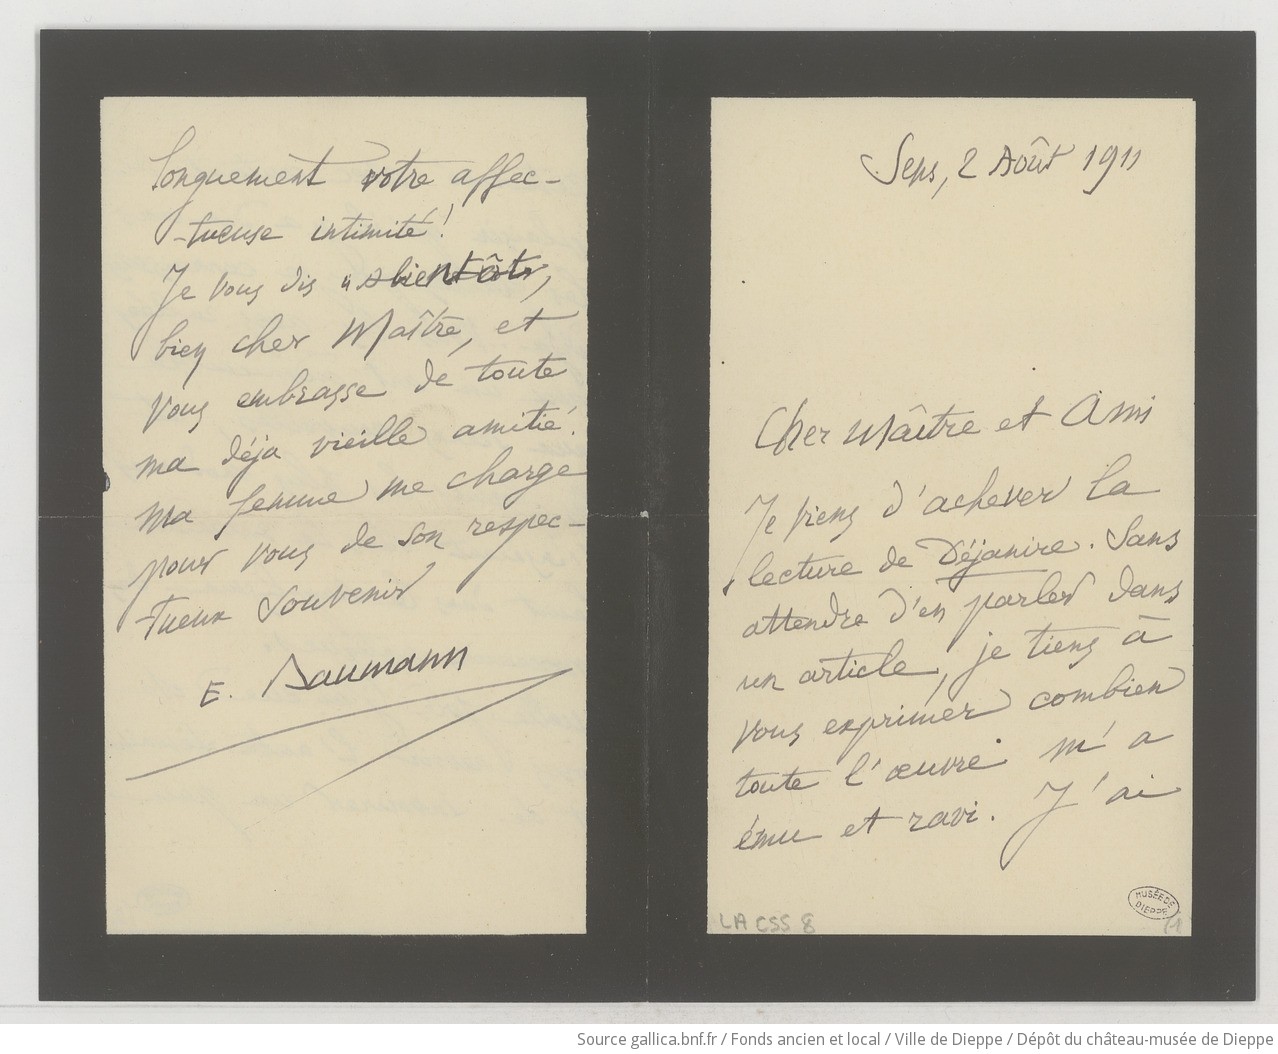 [49 lettres, 5 cartes-lettres, 2 cartes postales et 1 carte de visite d'Emile Baumann à Camille Saint-Saëns] (manuscrit autographe)